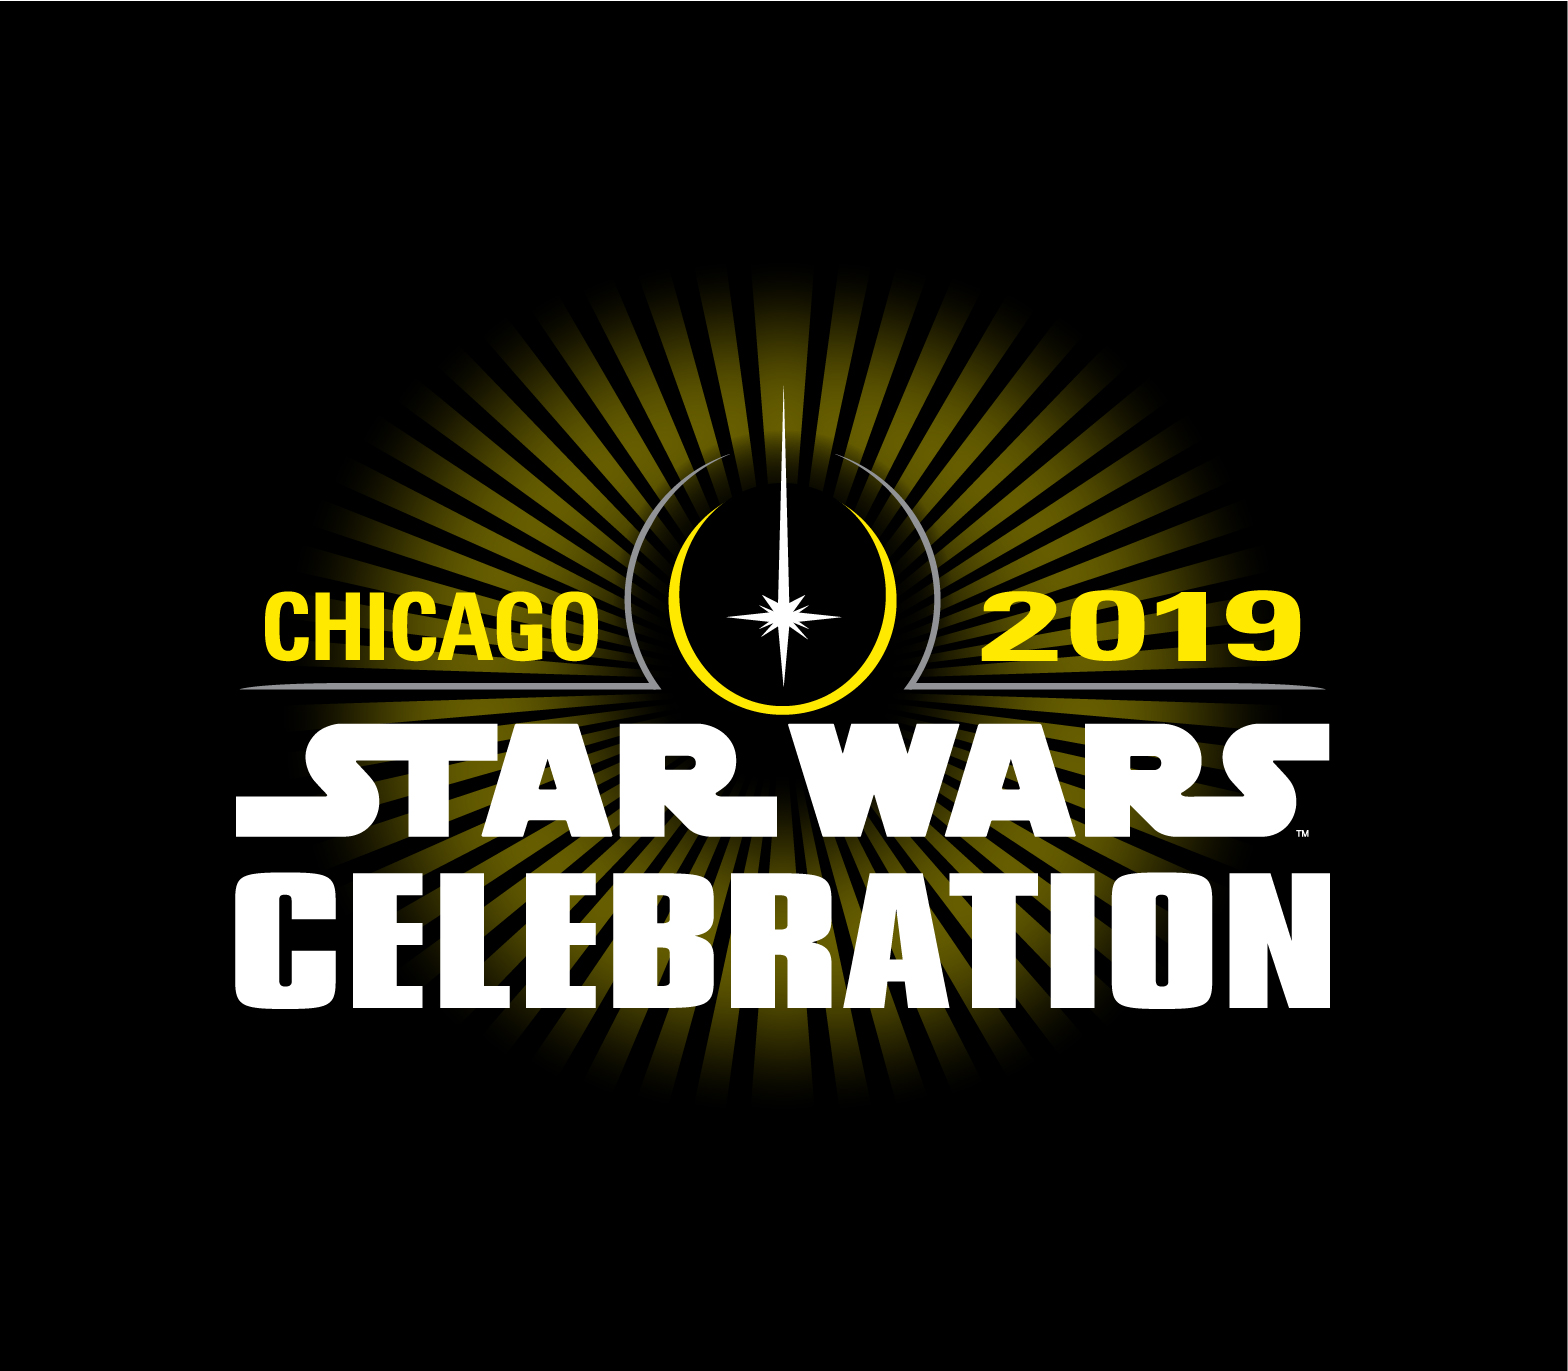 Star Wars Celebration Ticket Details have been revealed! IoMGeek